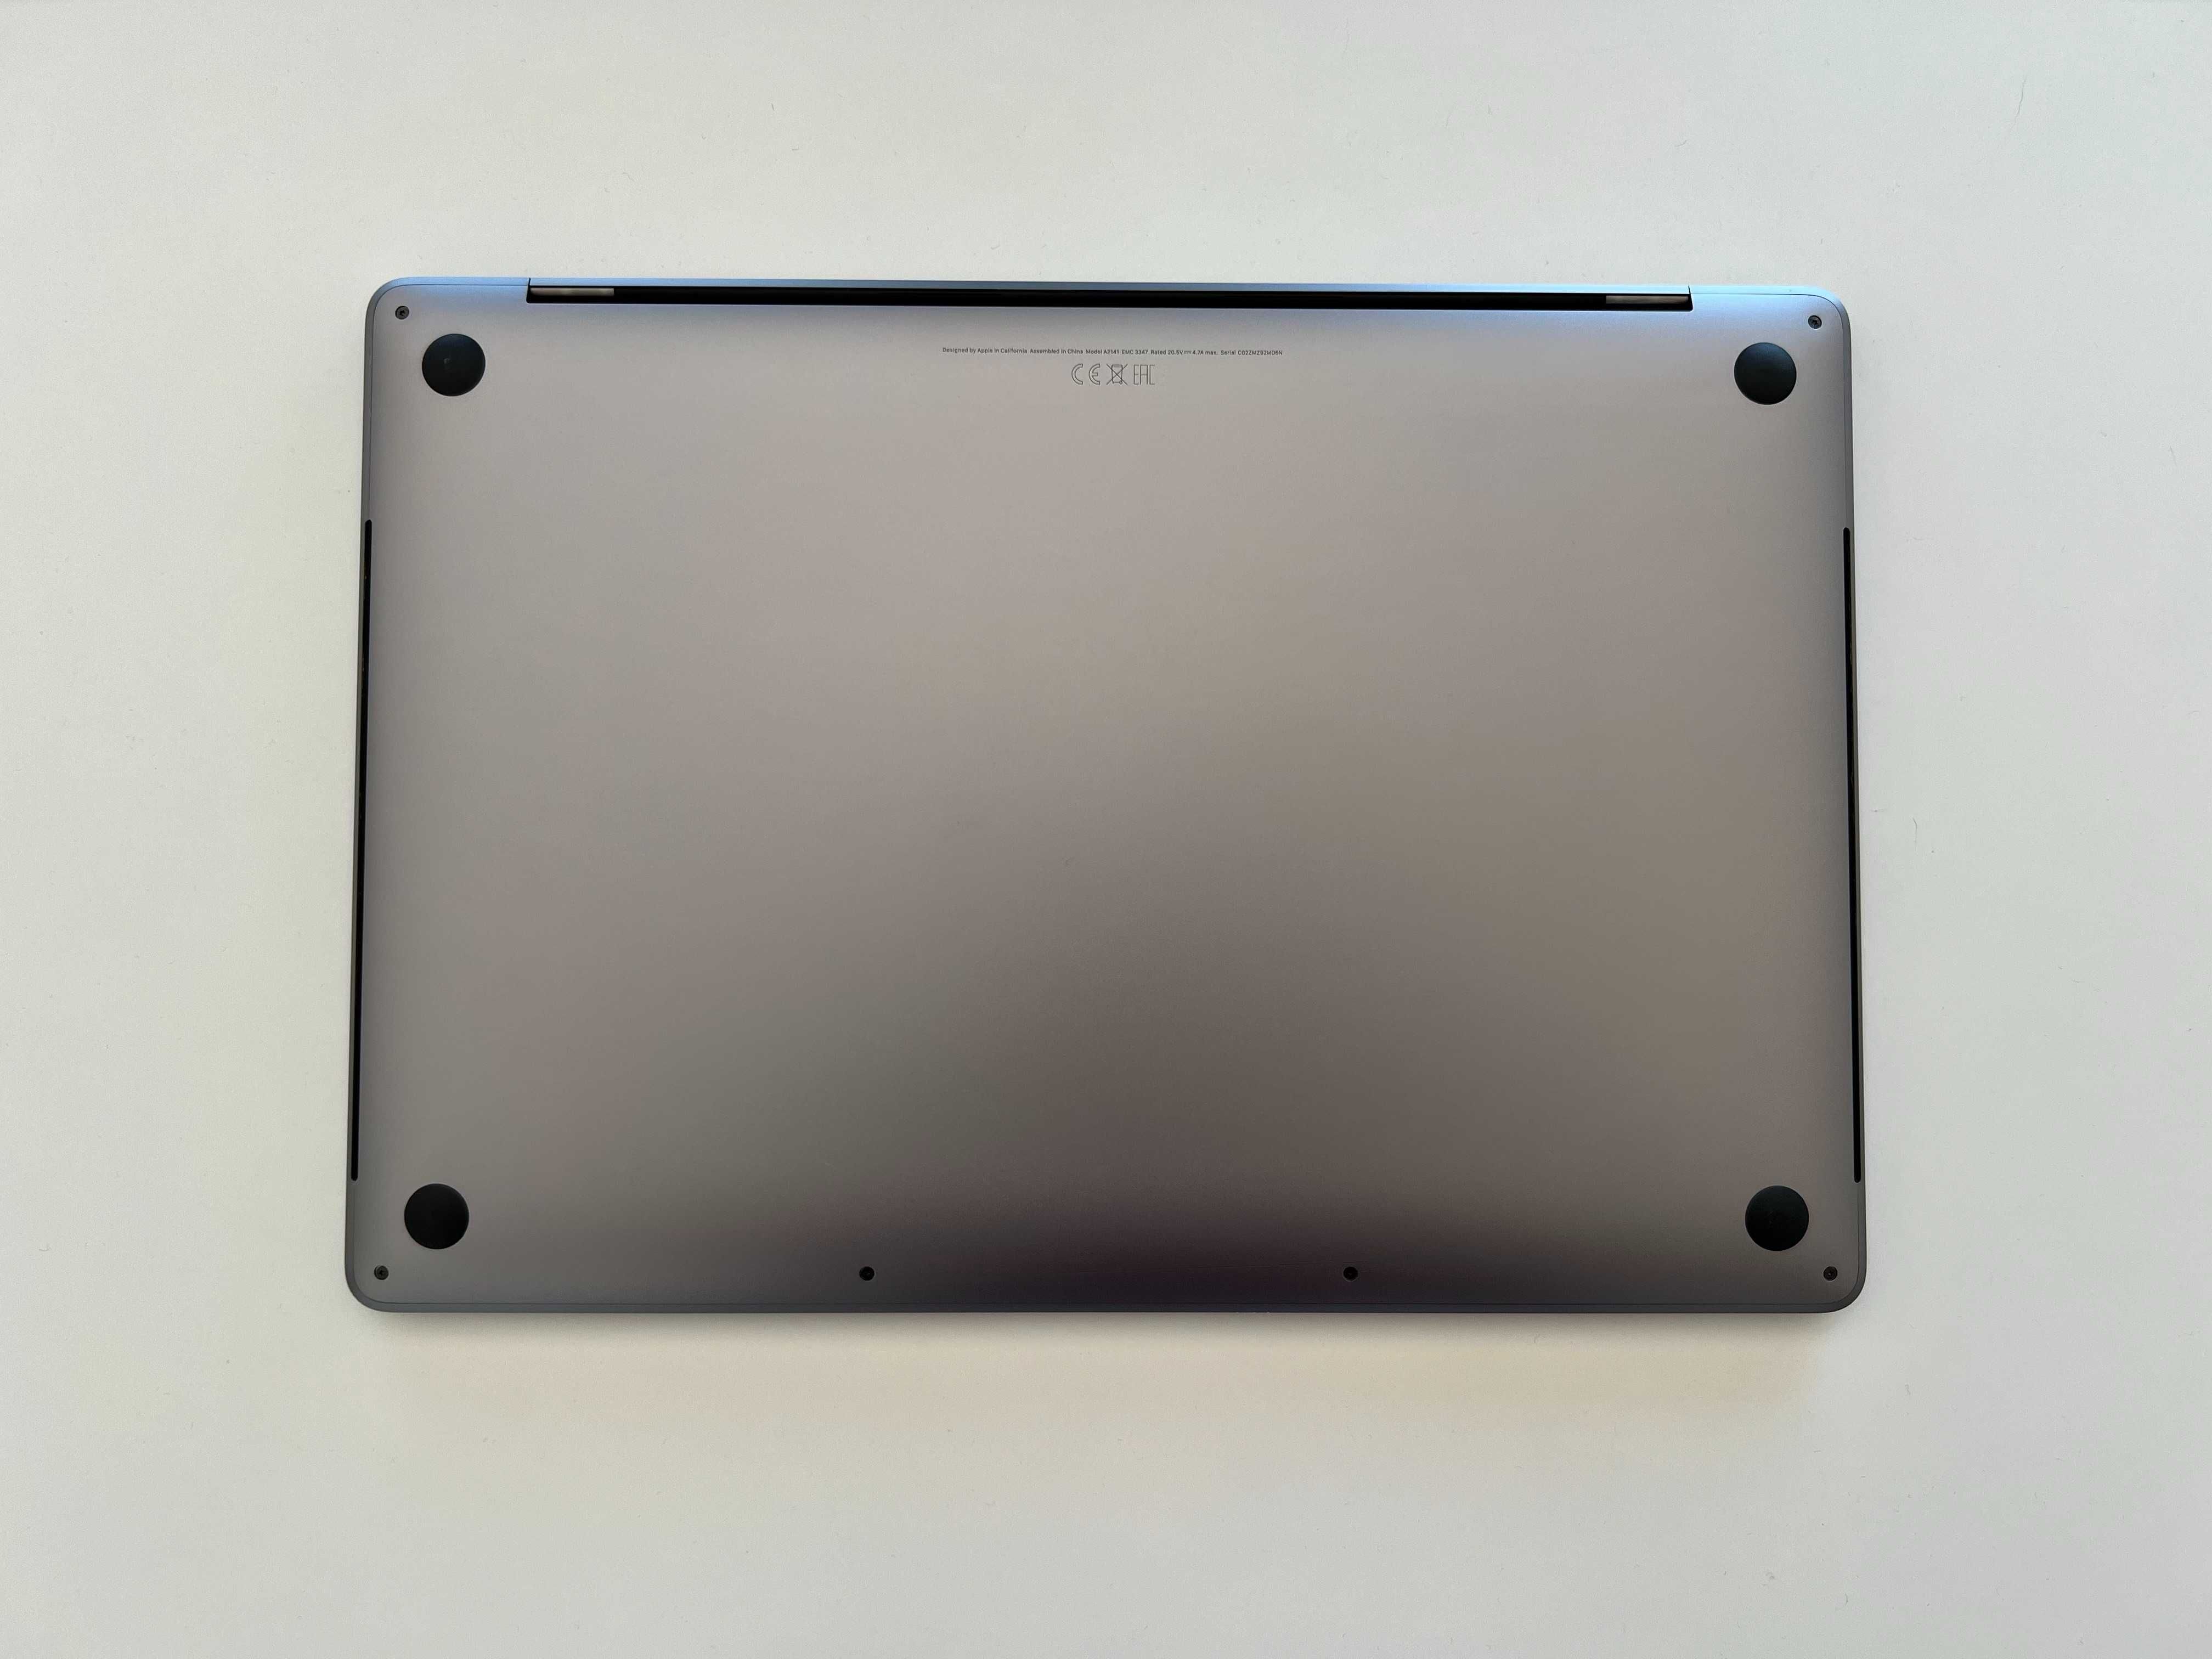 Macbook Pro 16" TouchBar | Intel i9 8-core 2.3 GHz | 16GB RAM | 1TB